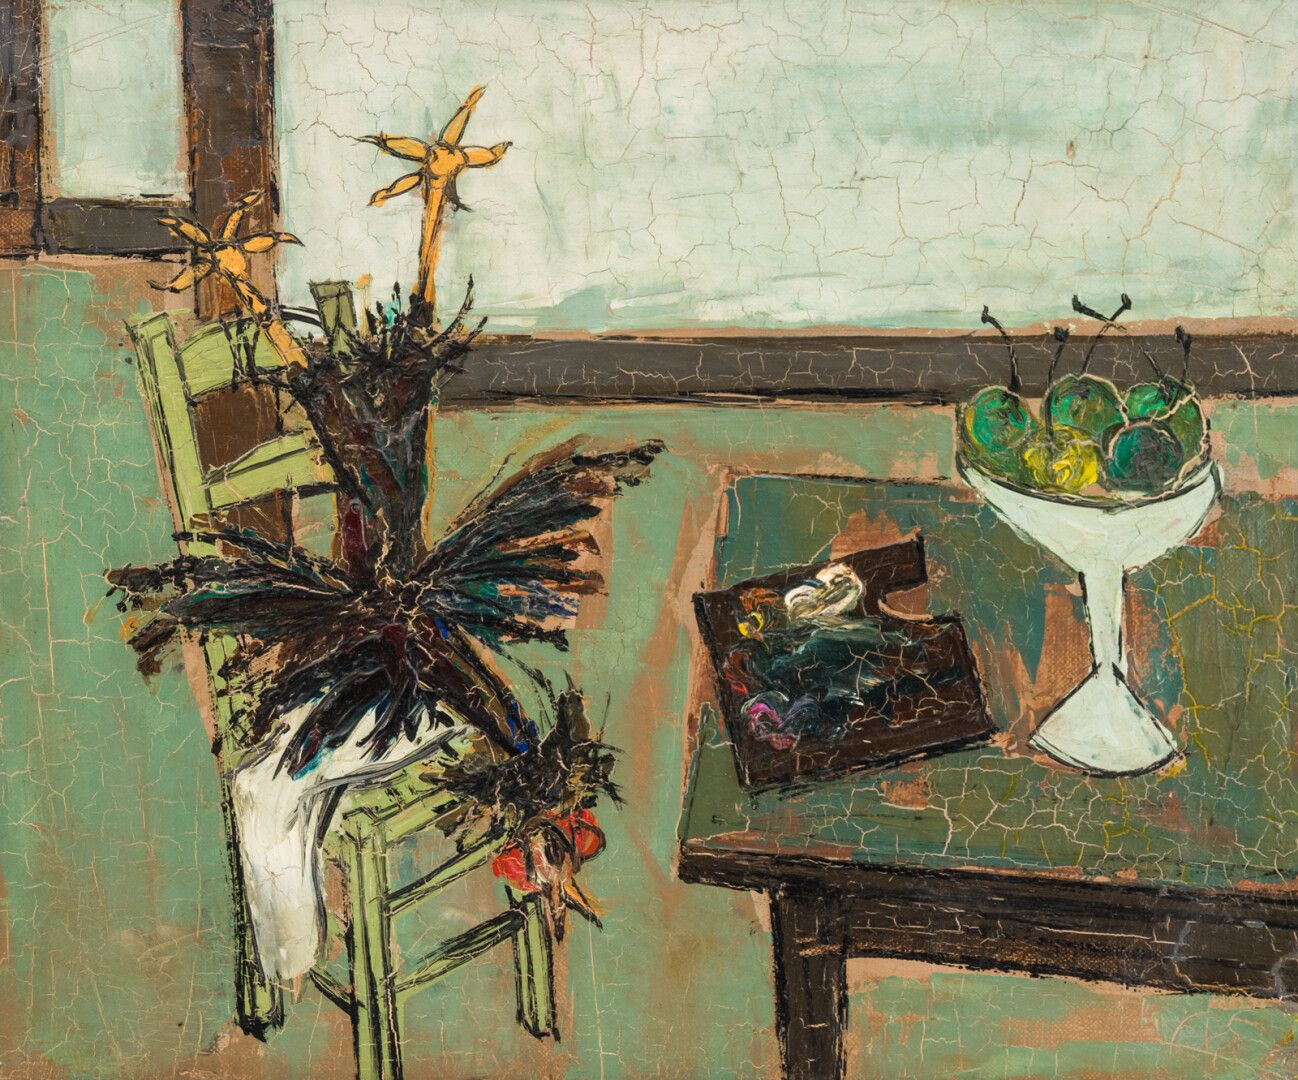 Null 克劳德-维纳 (1913-1999)

有公鸡、调色板和水果碗的静物画，1948年

布面油画，背面有签名和日期

37 x 45厘米

(裂缝)

&hellip;